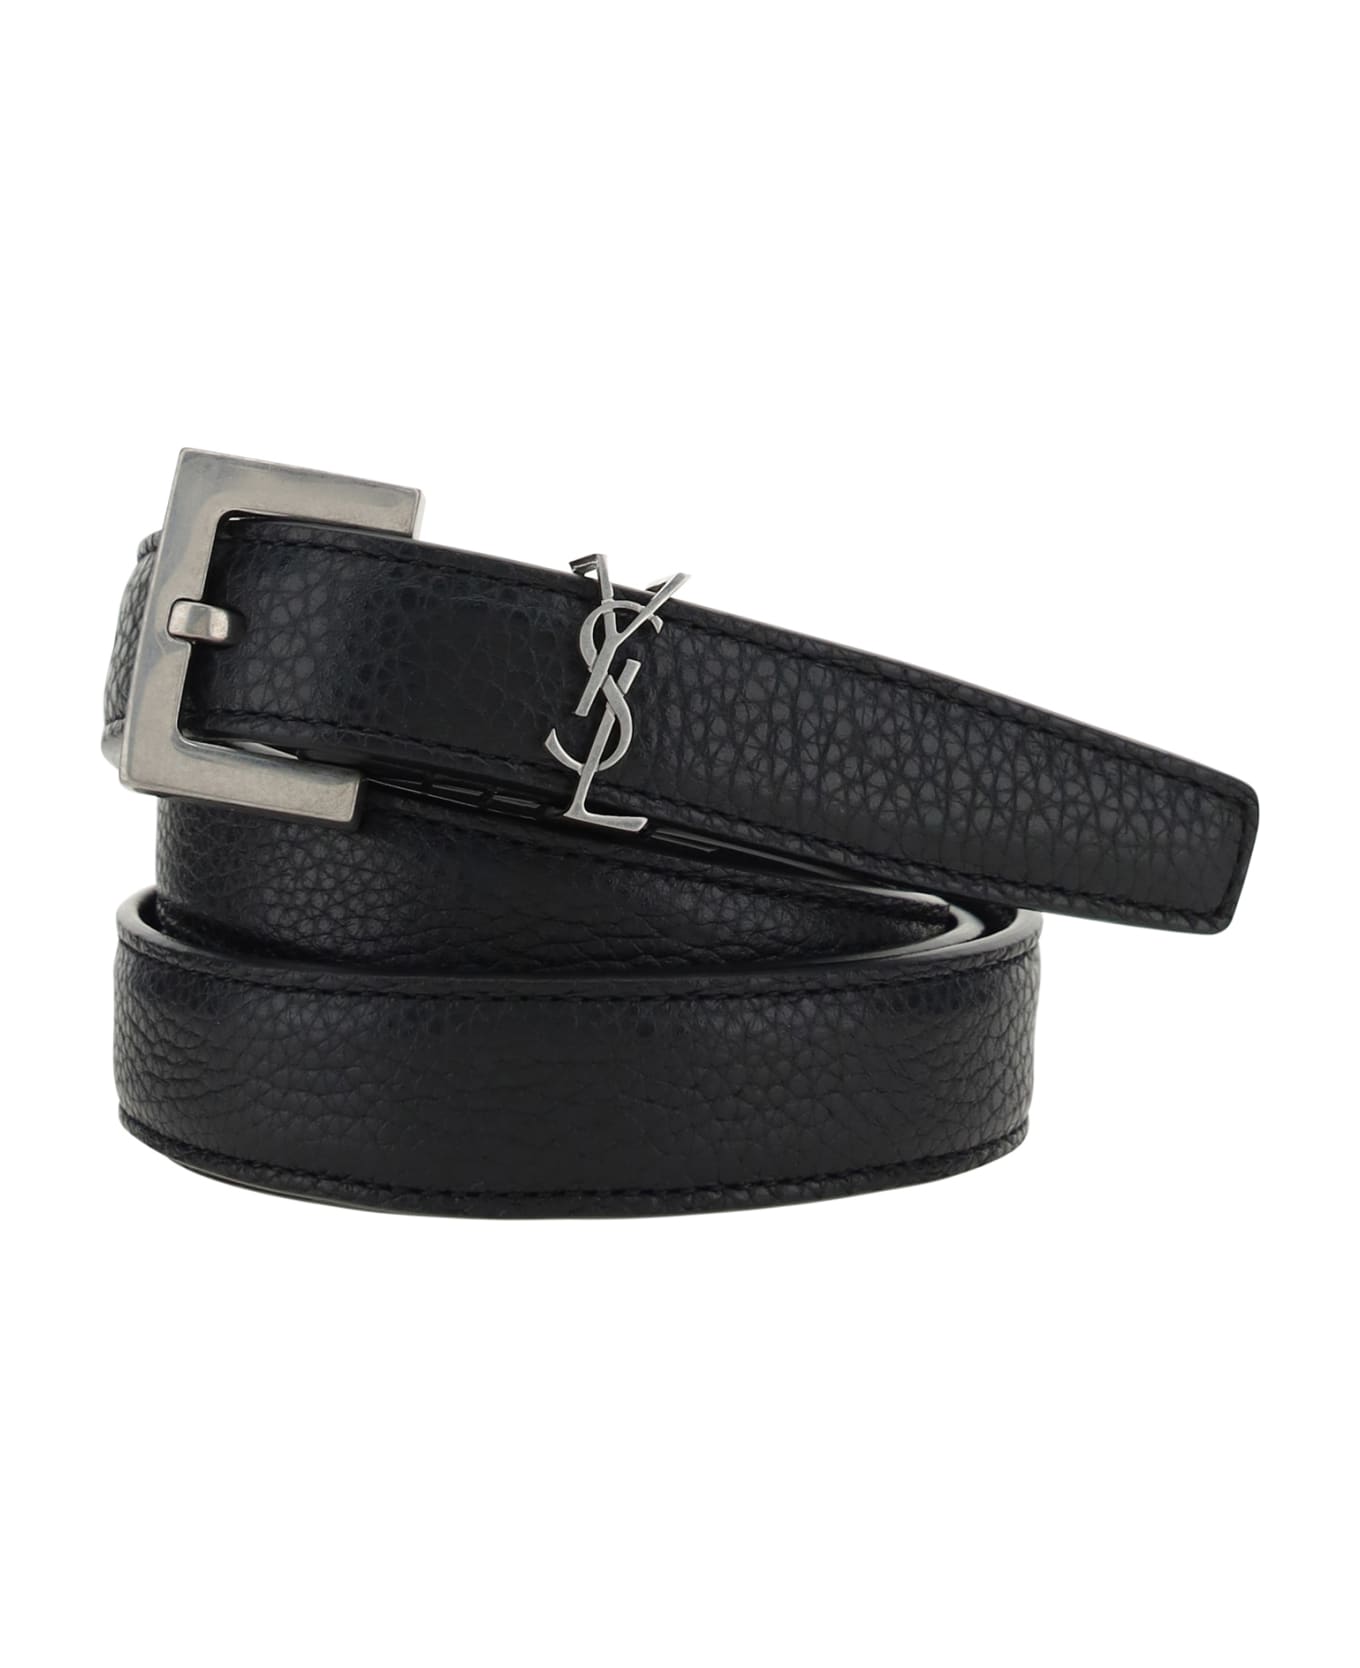 Saint Laurent Leather Belt - Black